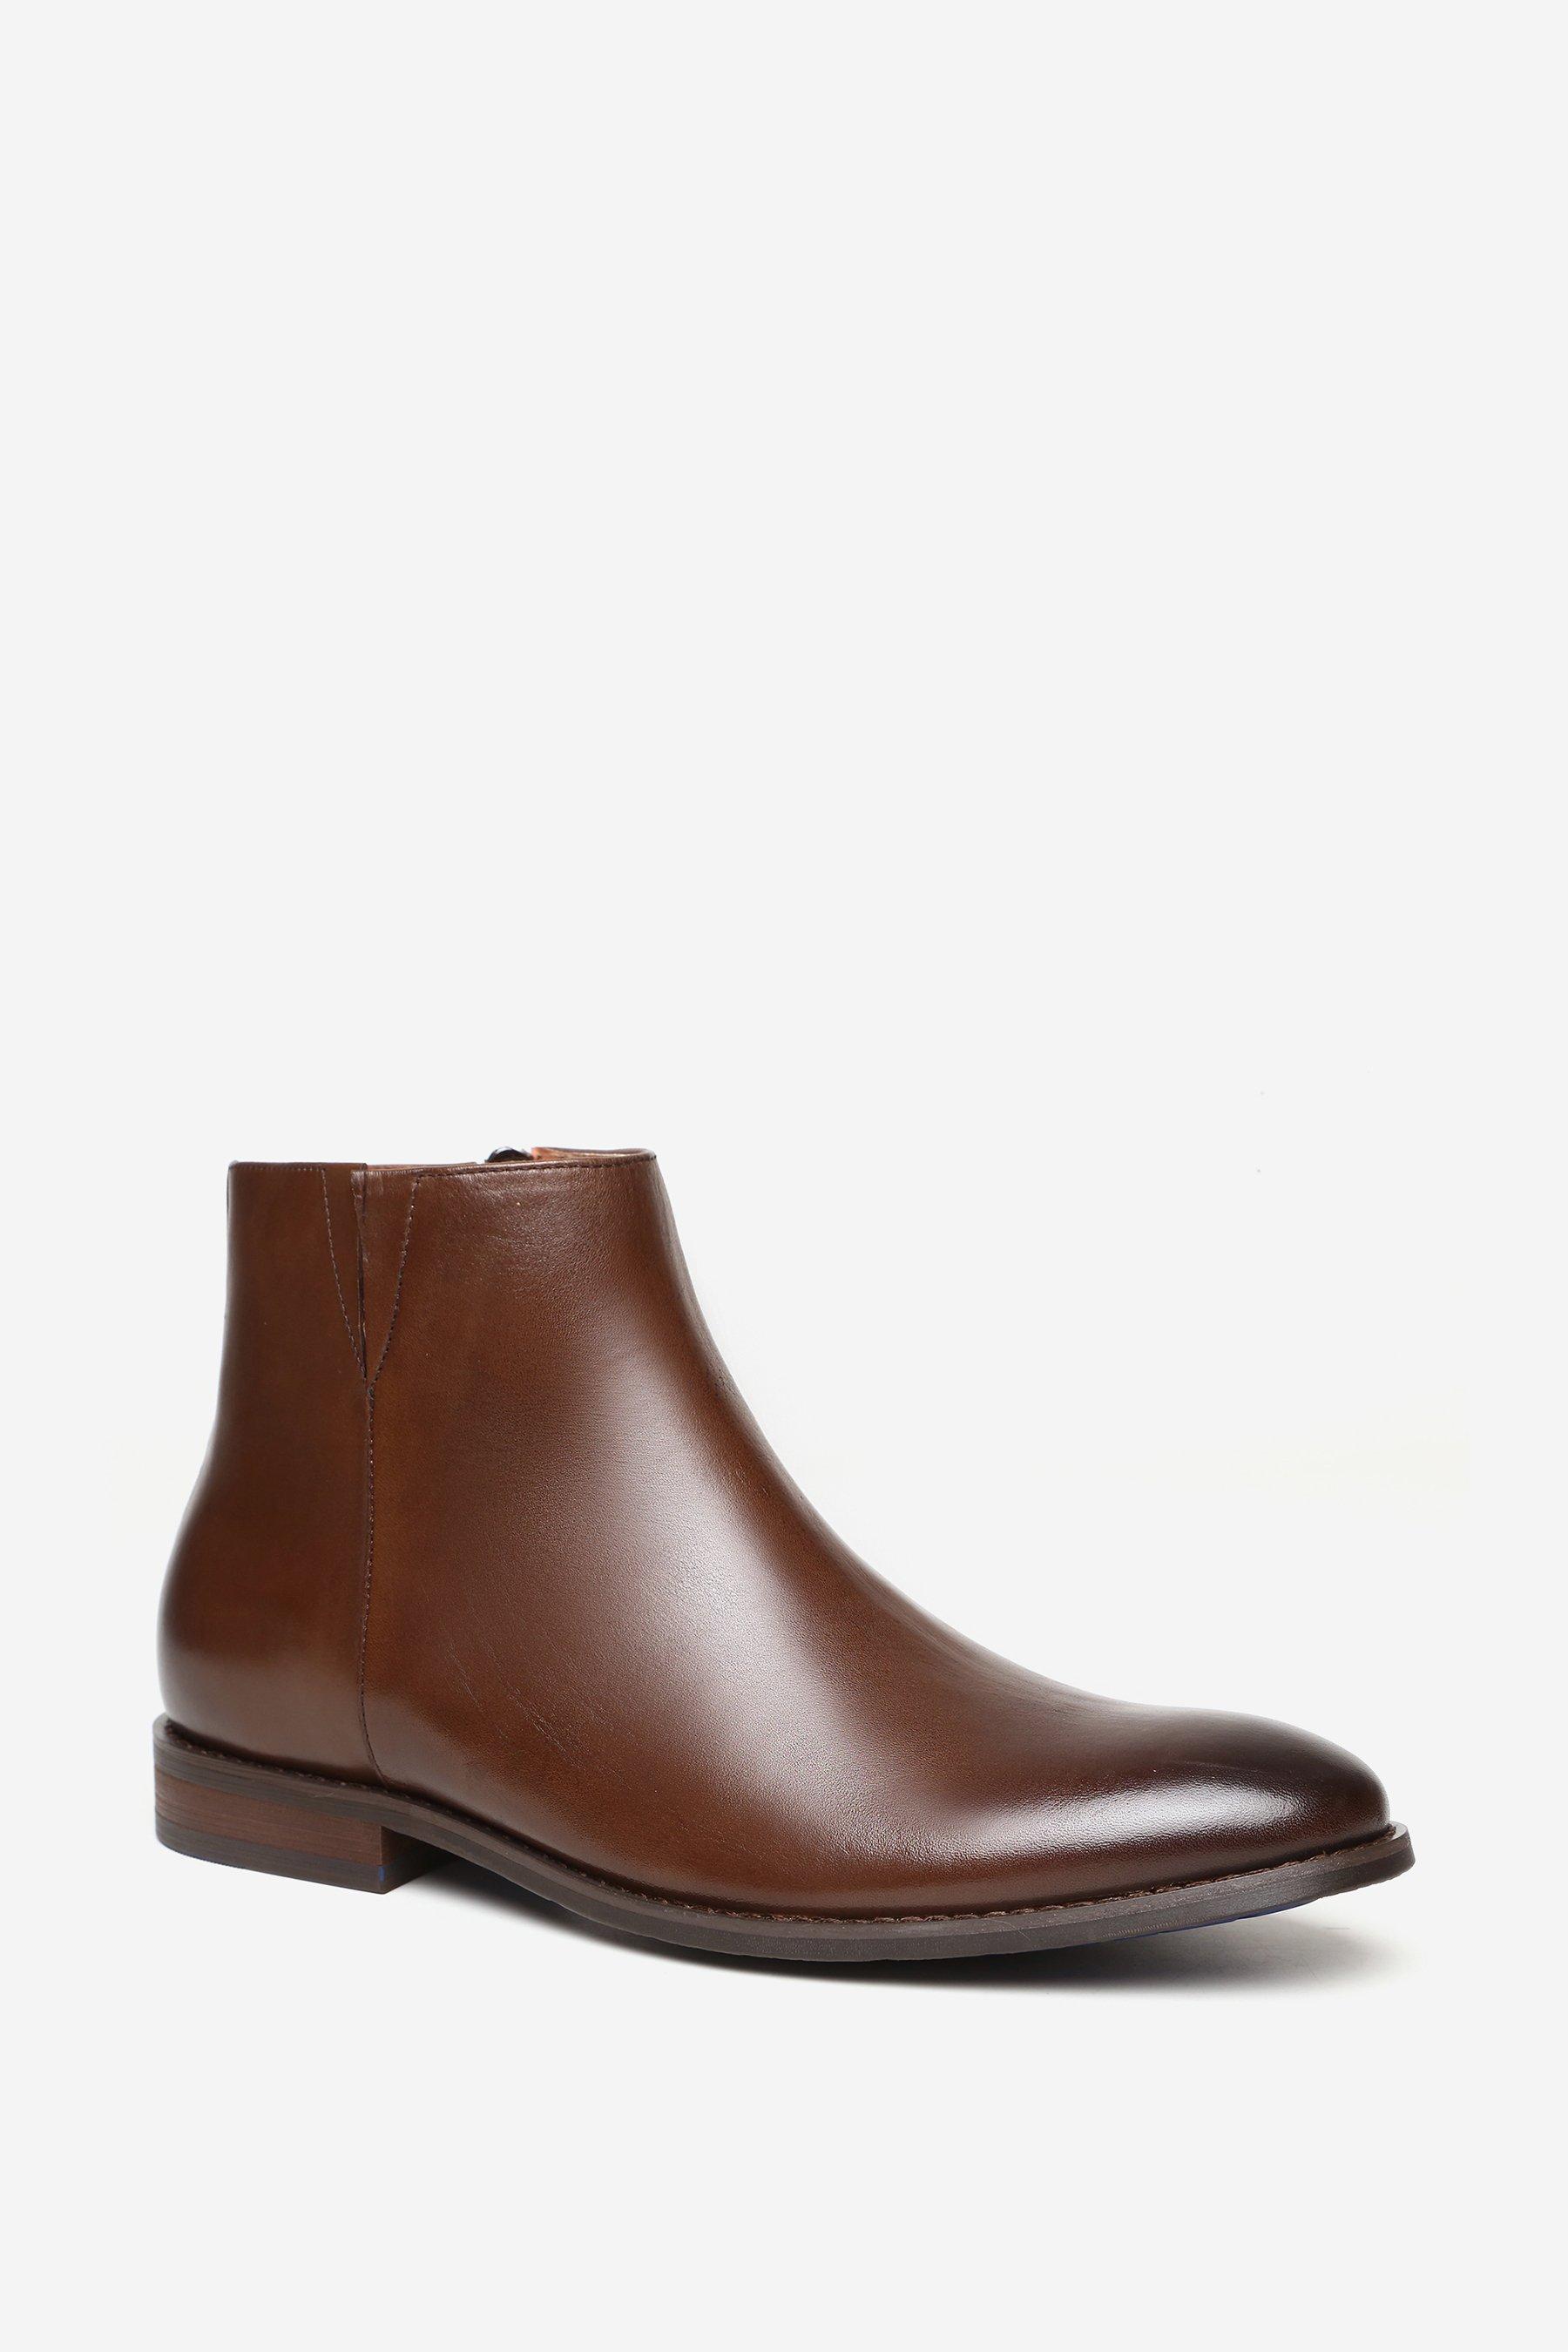 Кожаные ботинки челси премиум-класса 'Ridley' Alexander Pace, коричневый